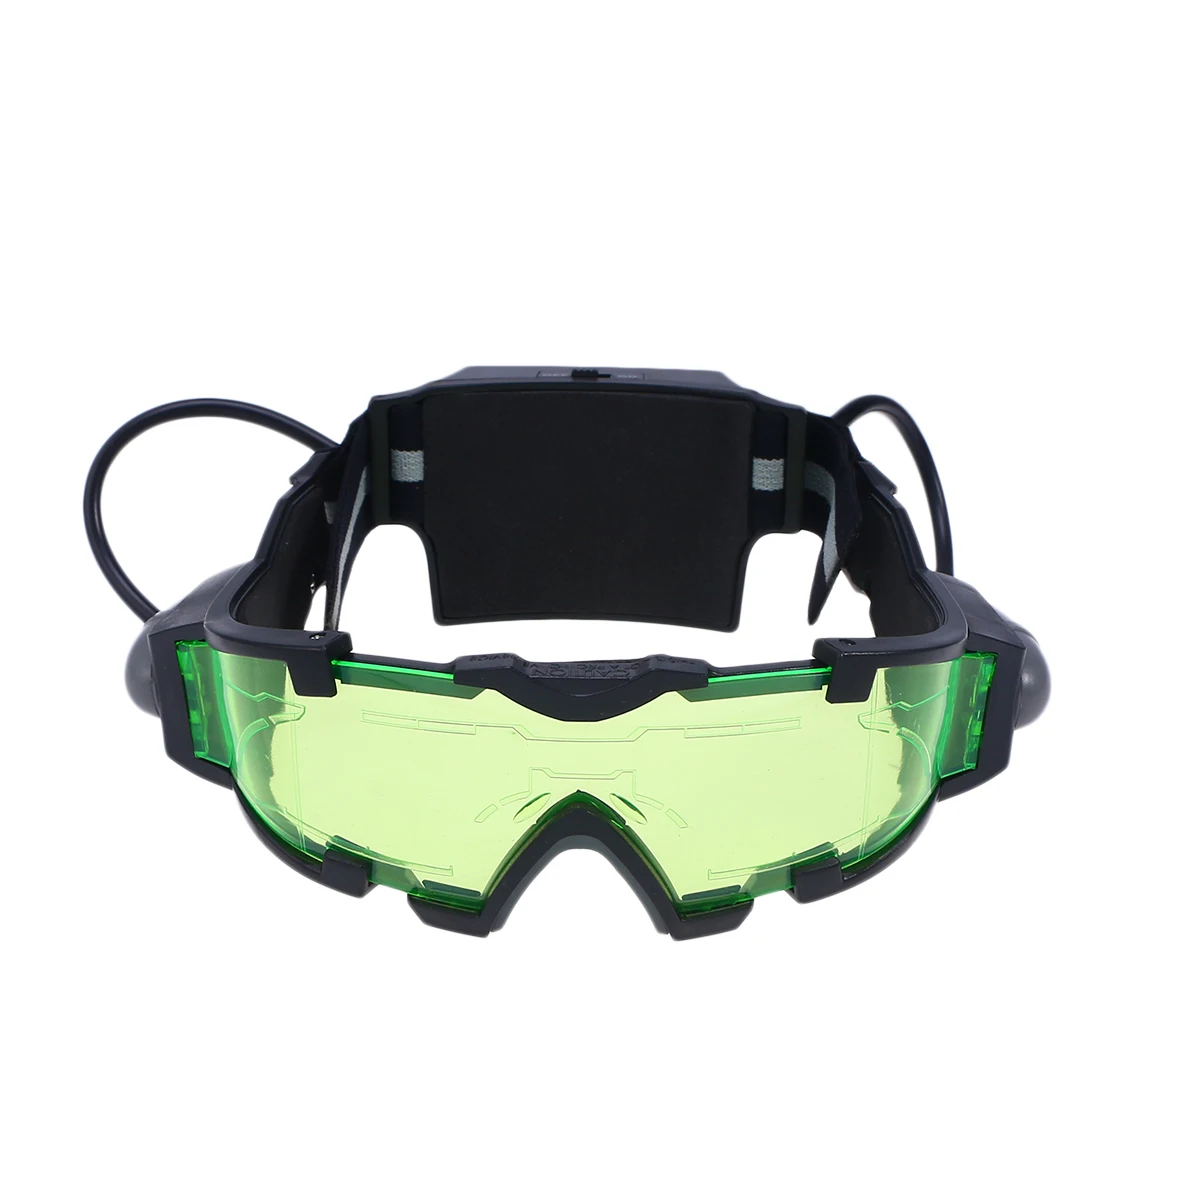 1 пара прочных регулируемых детских ночных очков, шпионские очки ночного видения, защитные зеленые очки, защитные очки для езды на велосипеде